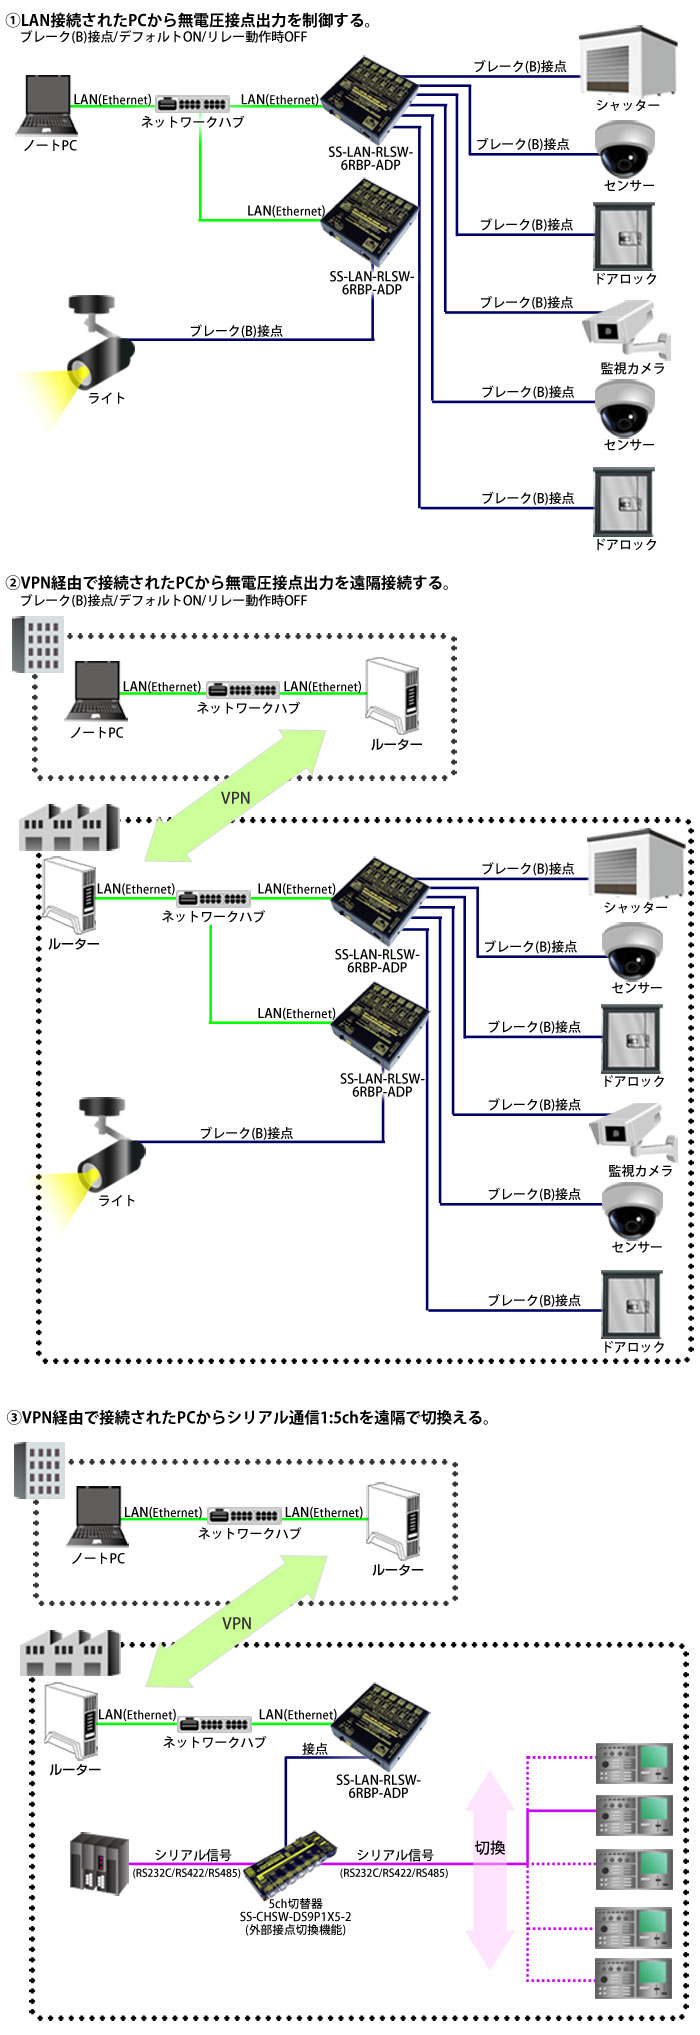 SS-LAN-RLSW-6RBP-ADP接続例